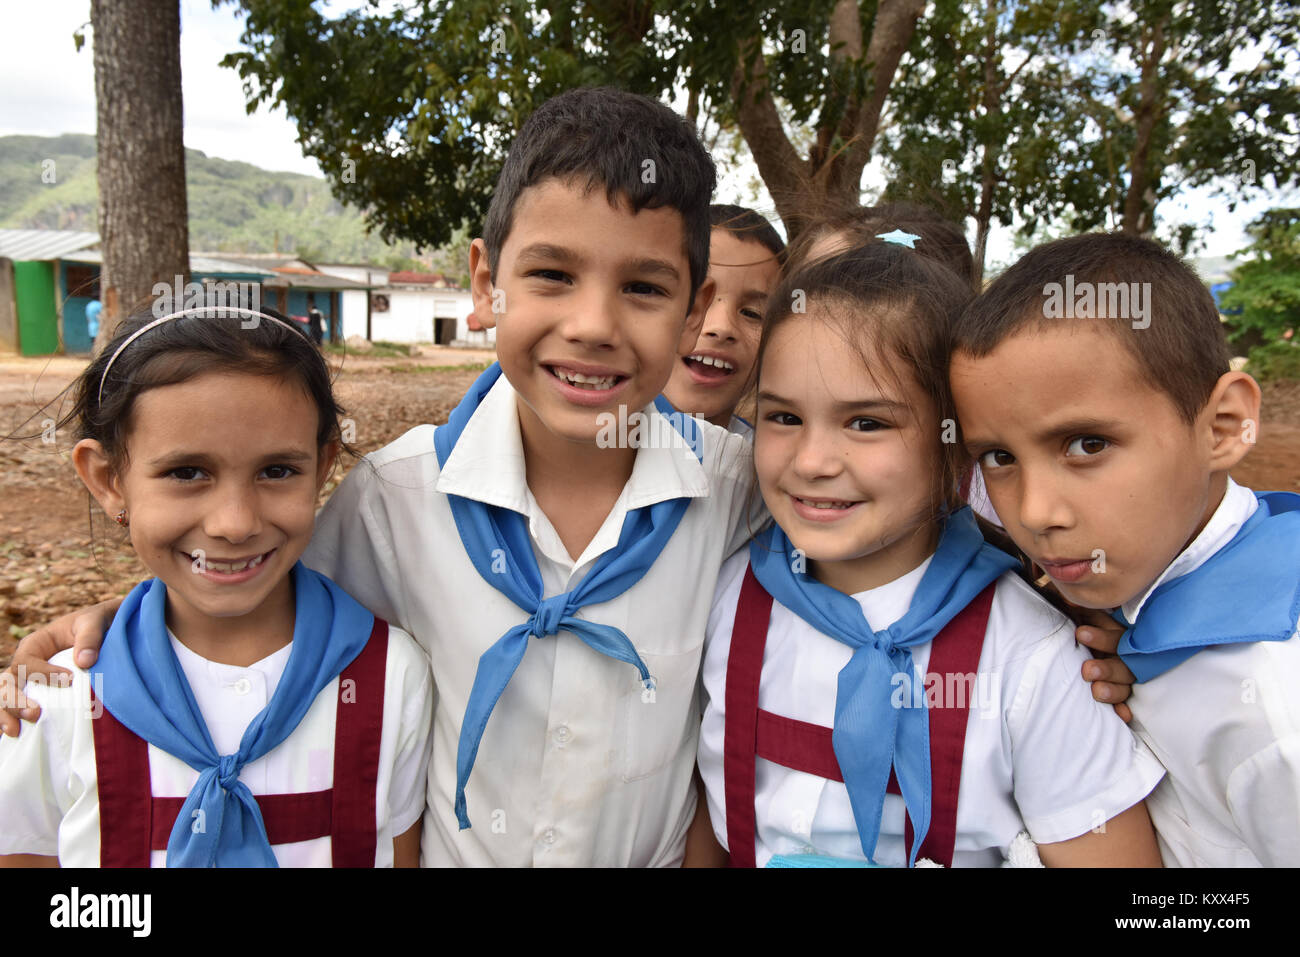 Cuban schoolchildren Stock Photo